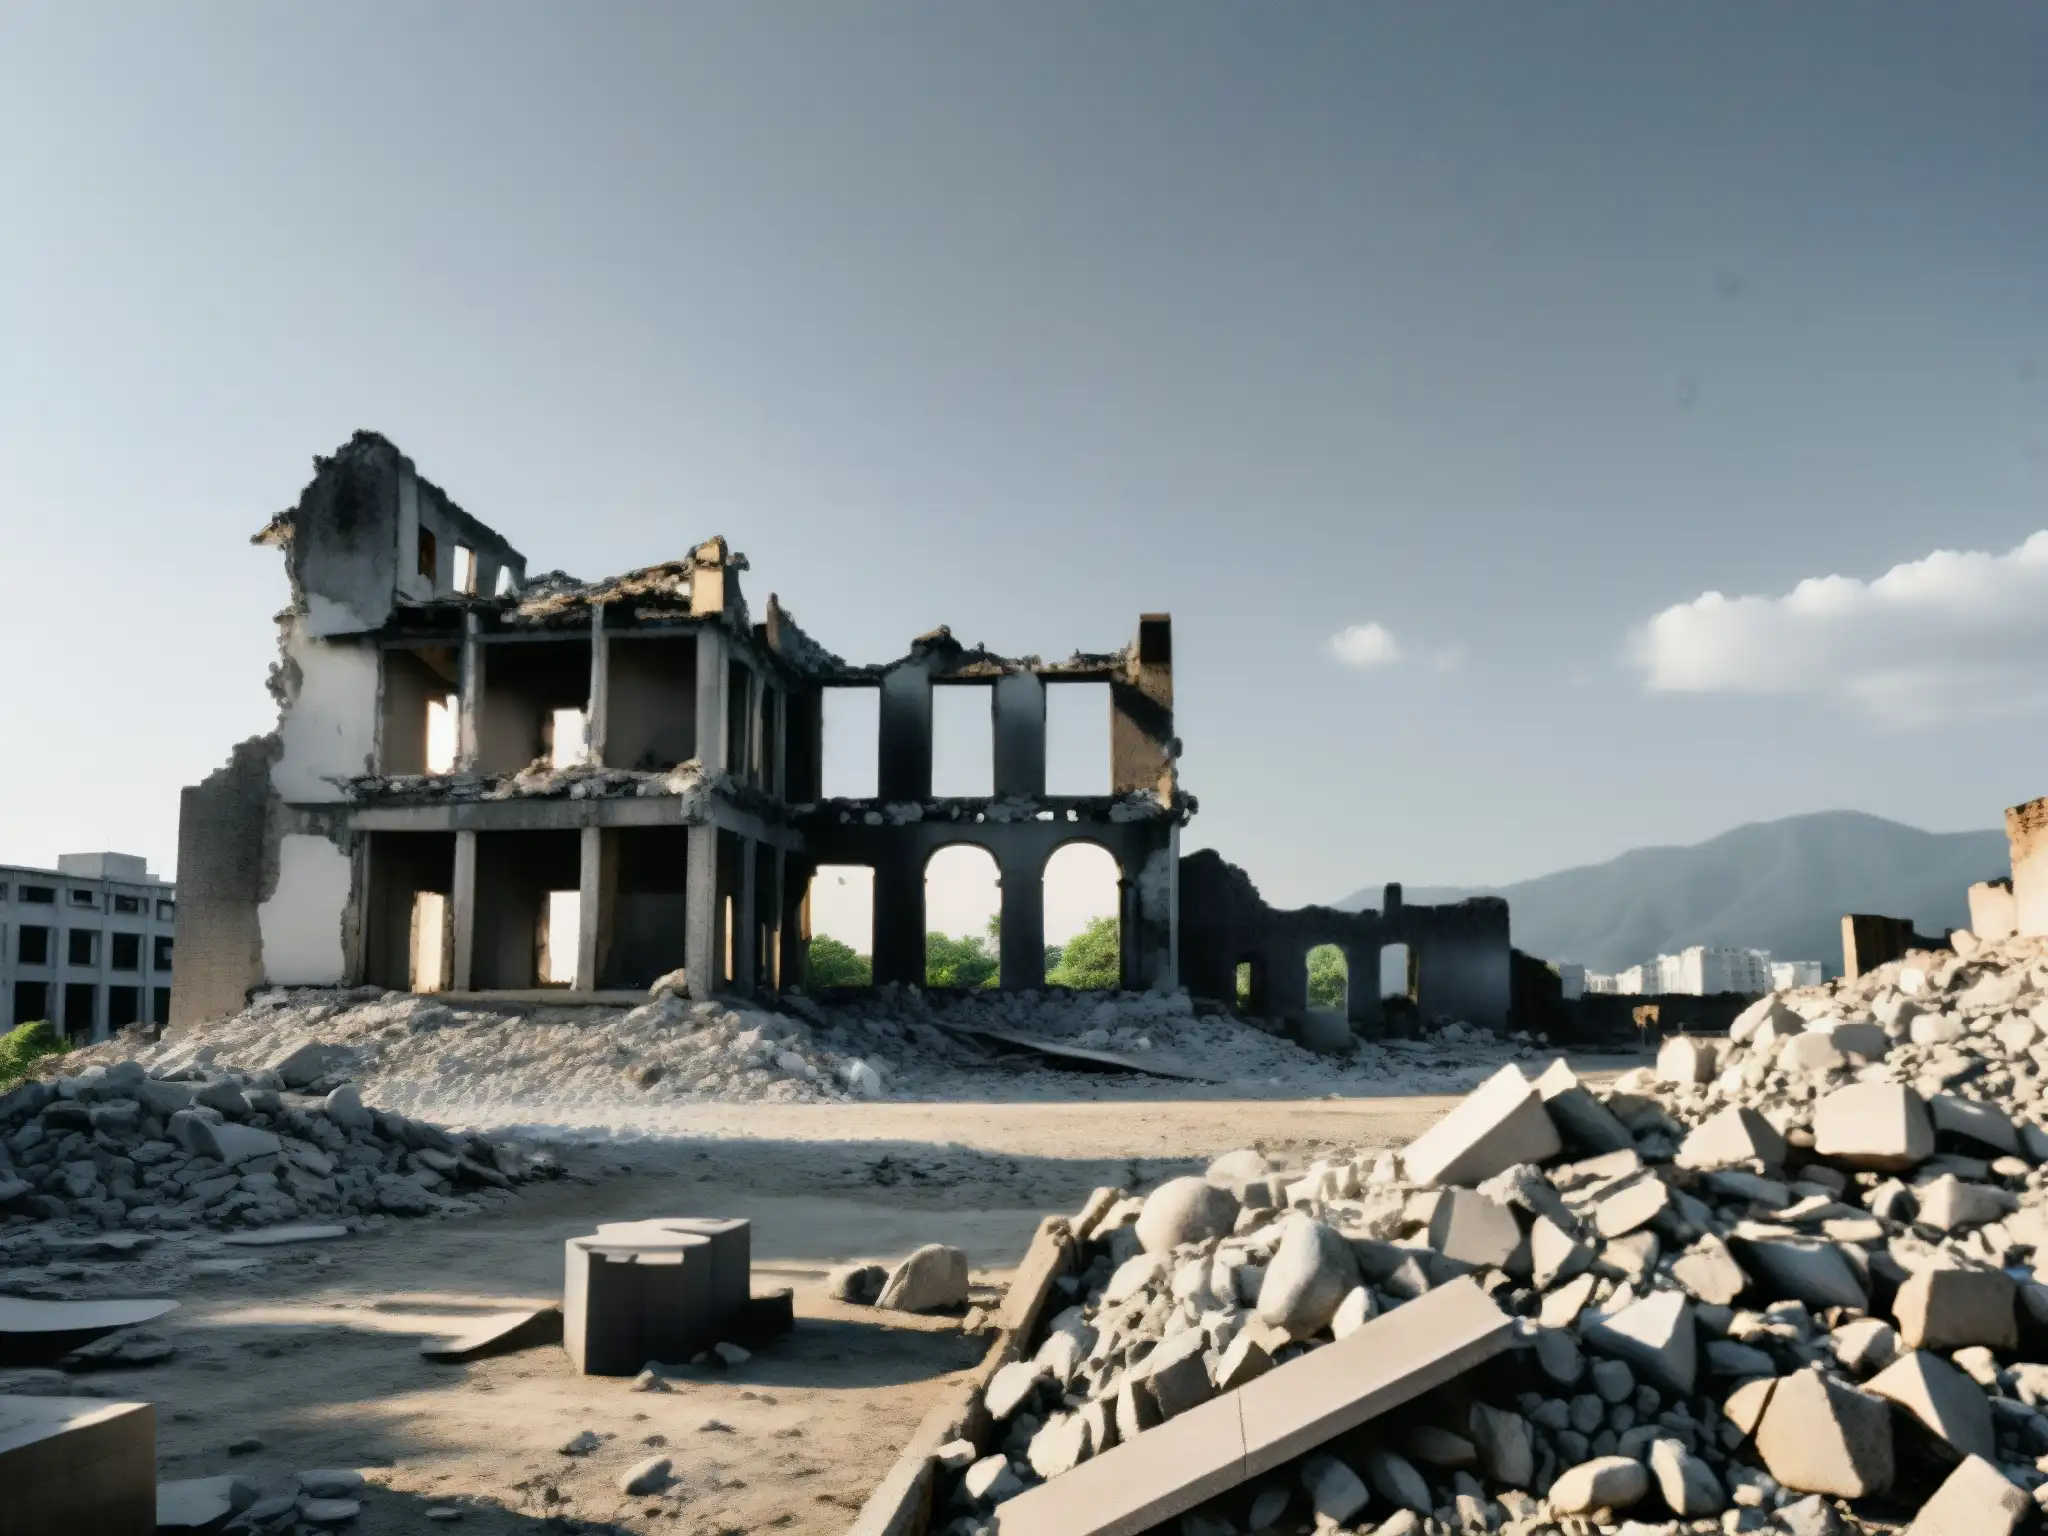 Ruinas en Hiroshima, con la sombría silueta de la estructura y la presencia fantasmal